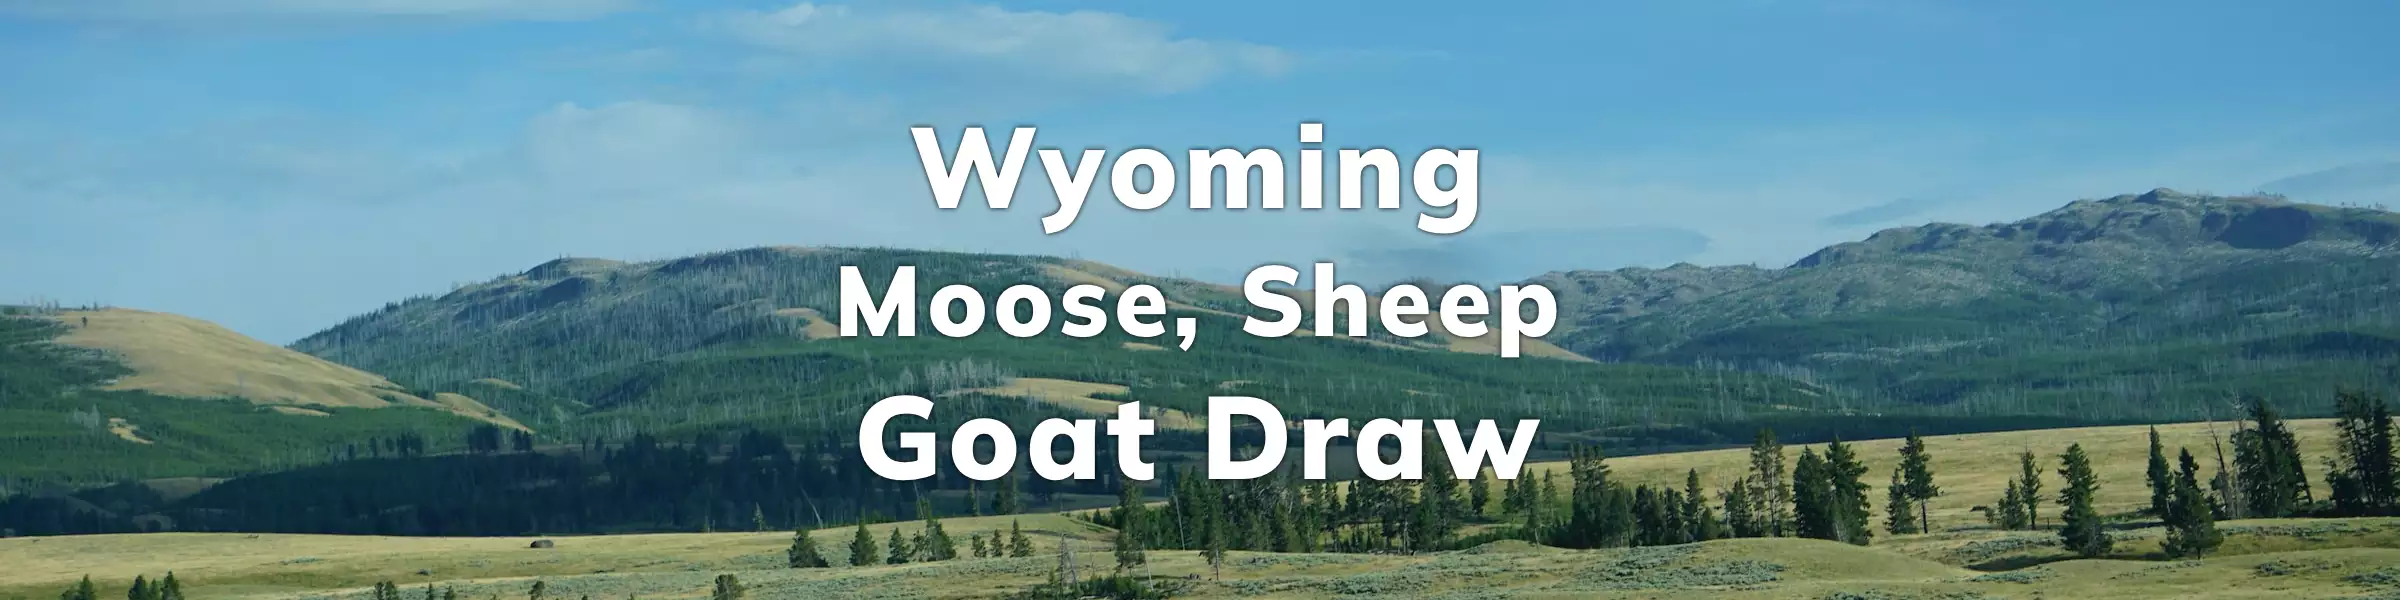 Wyoming Moose Sheep Goat Draw